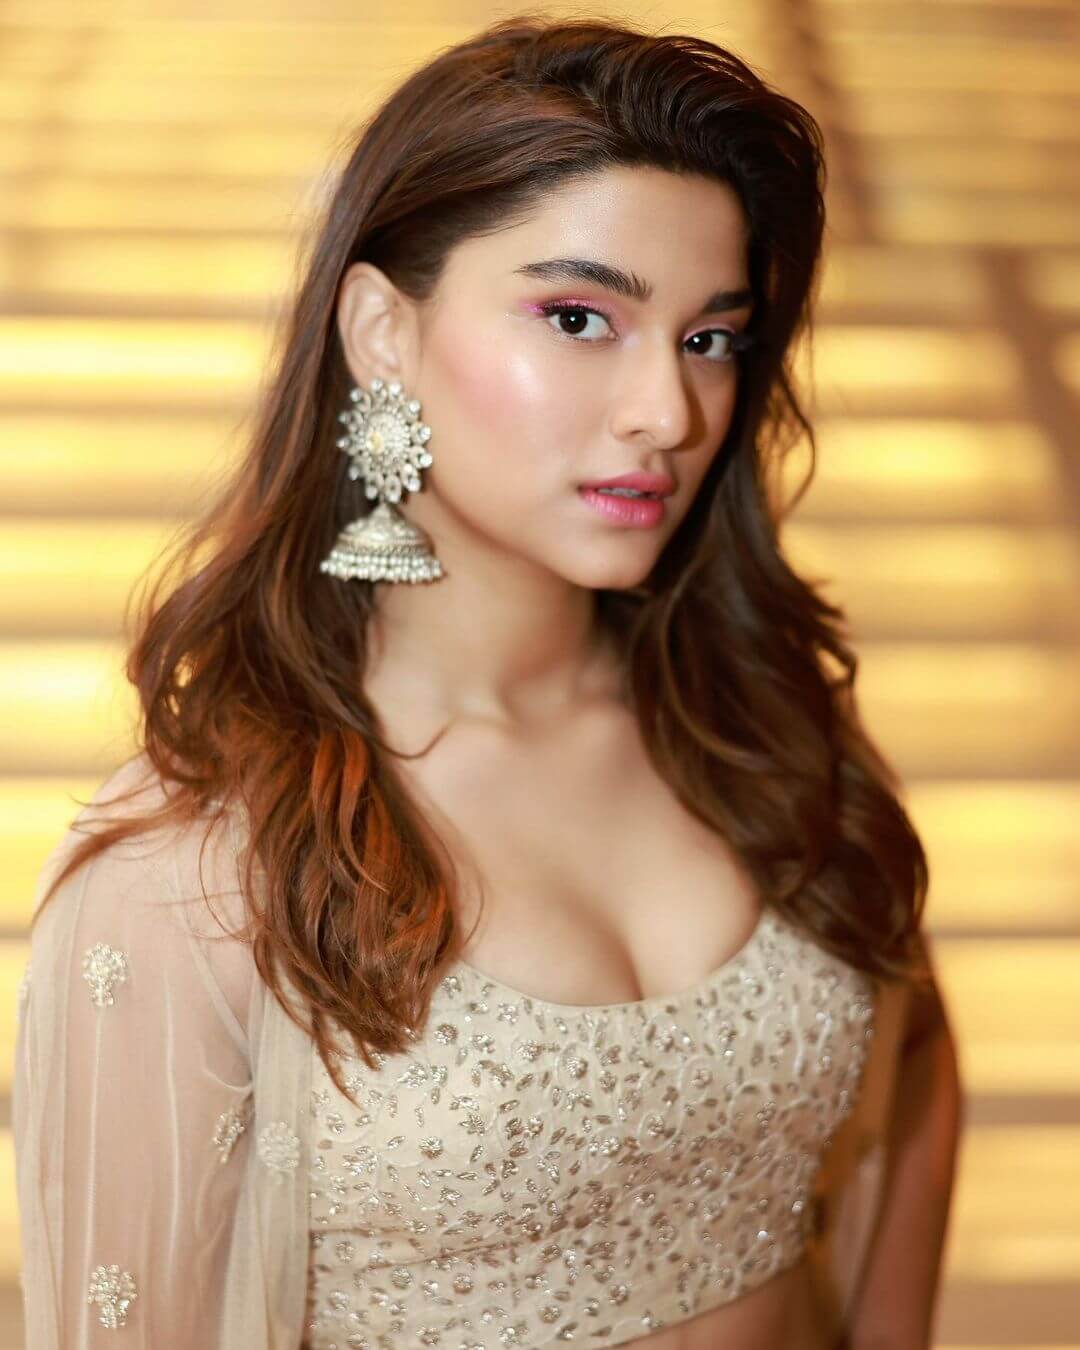 Actress Saiee Manjrekar sexy close up